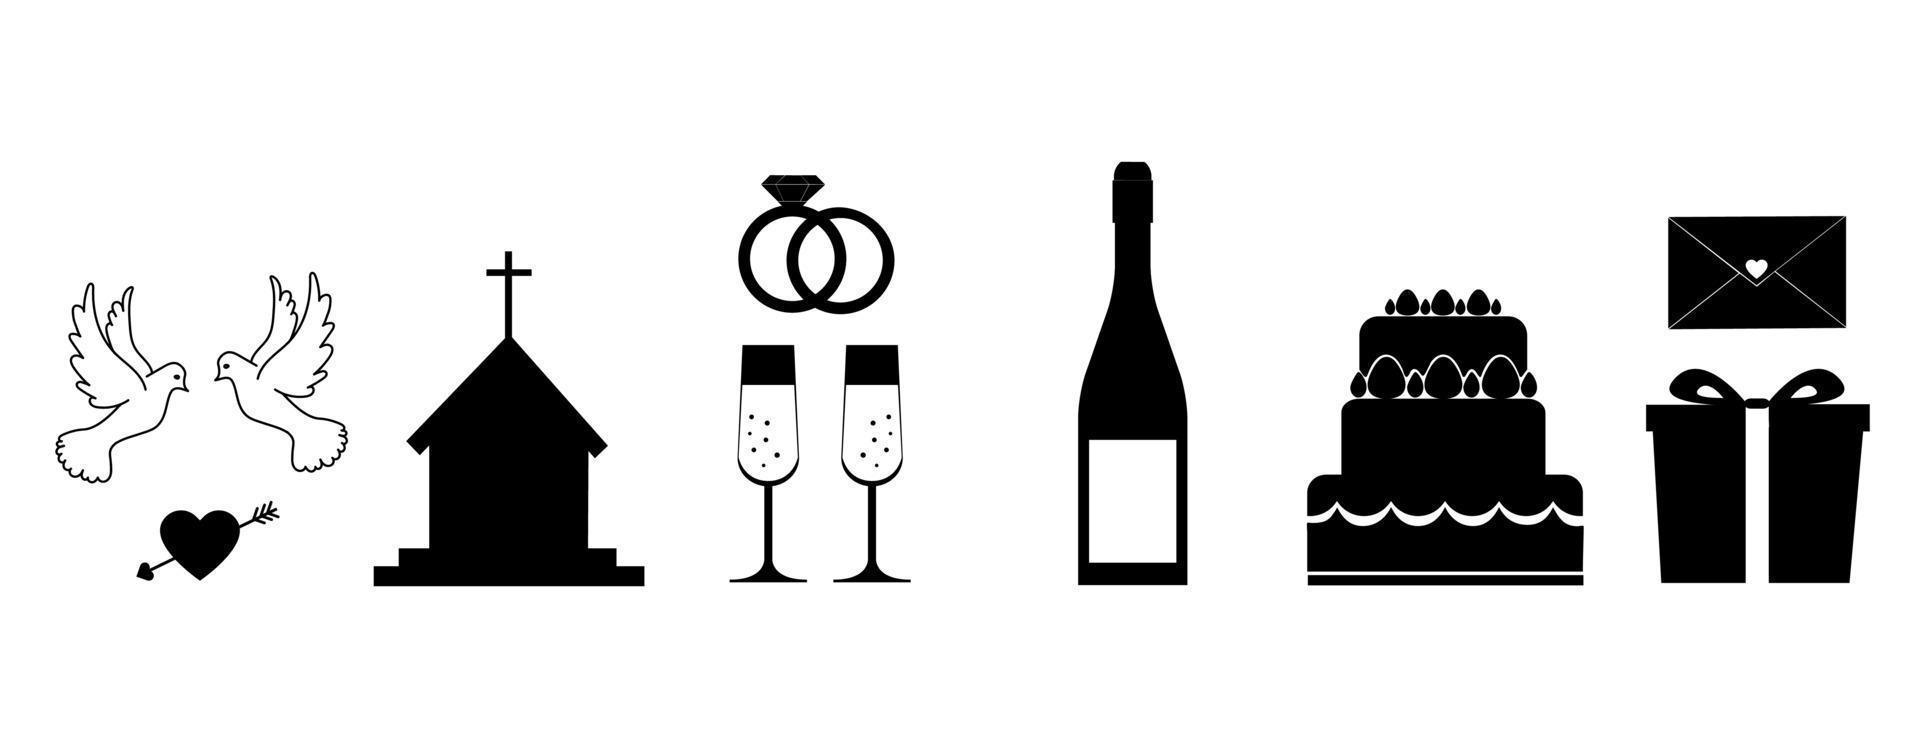 conjunto de iconos lineales de boda. ilustración vectorial en blanco y negro aislada sobre fondo blanco. vector